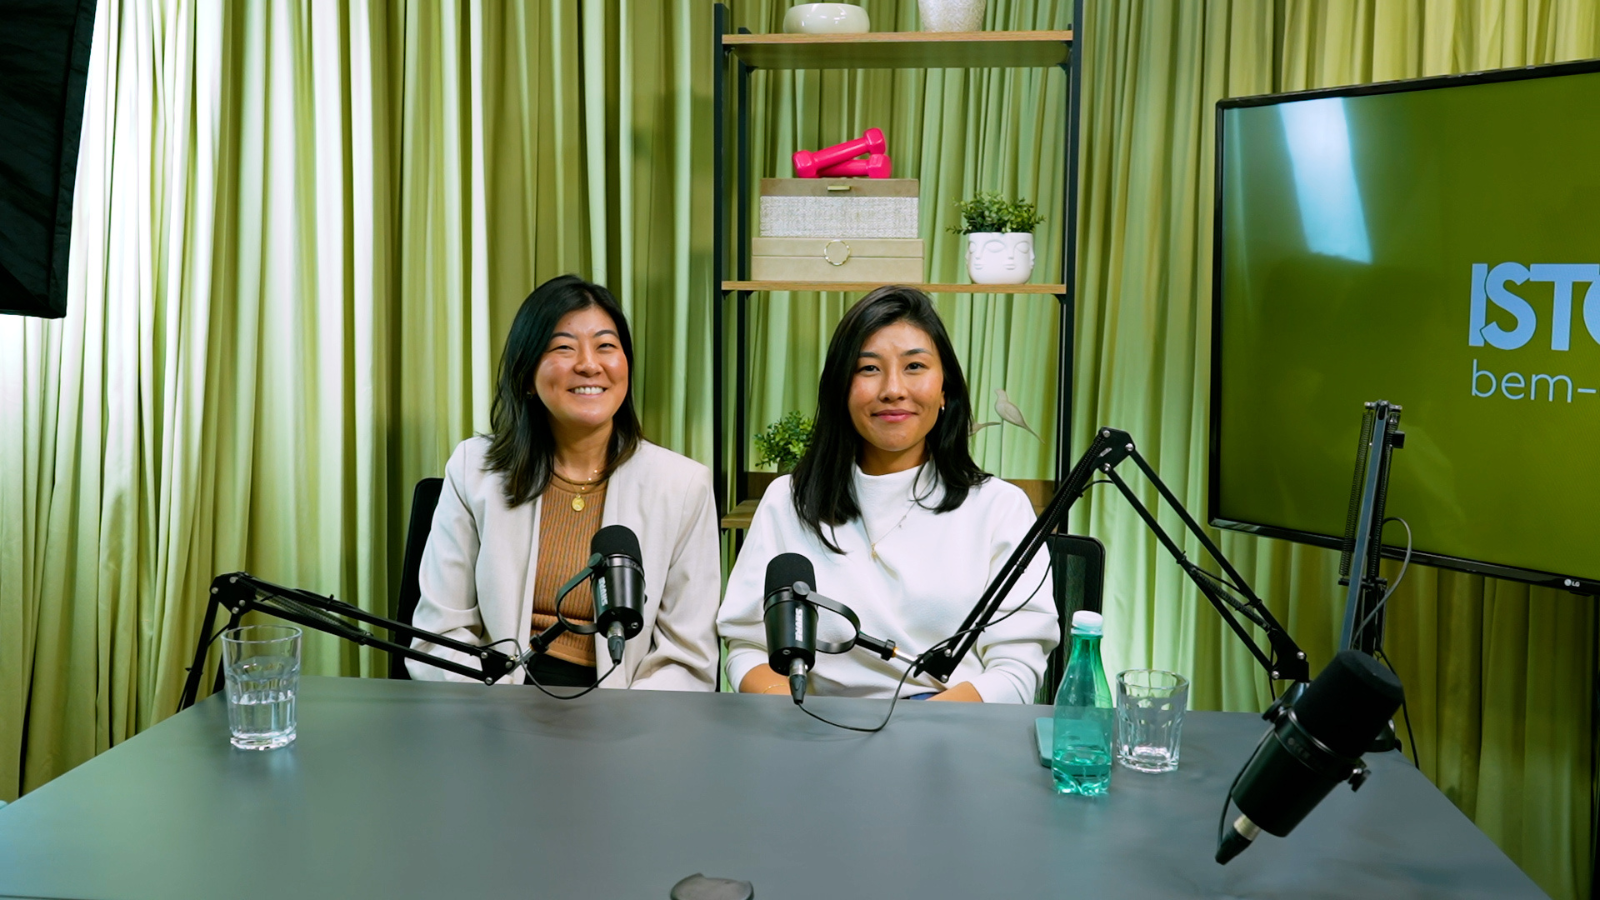 Podcast Bem-Estar #9 – Renata Luri e Juliana Satake falam sobre a idealização da maternidade